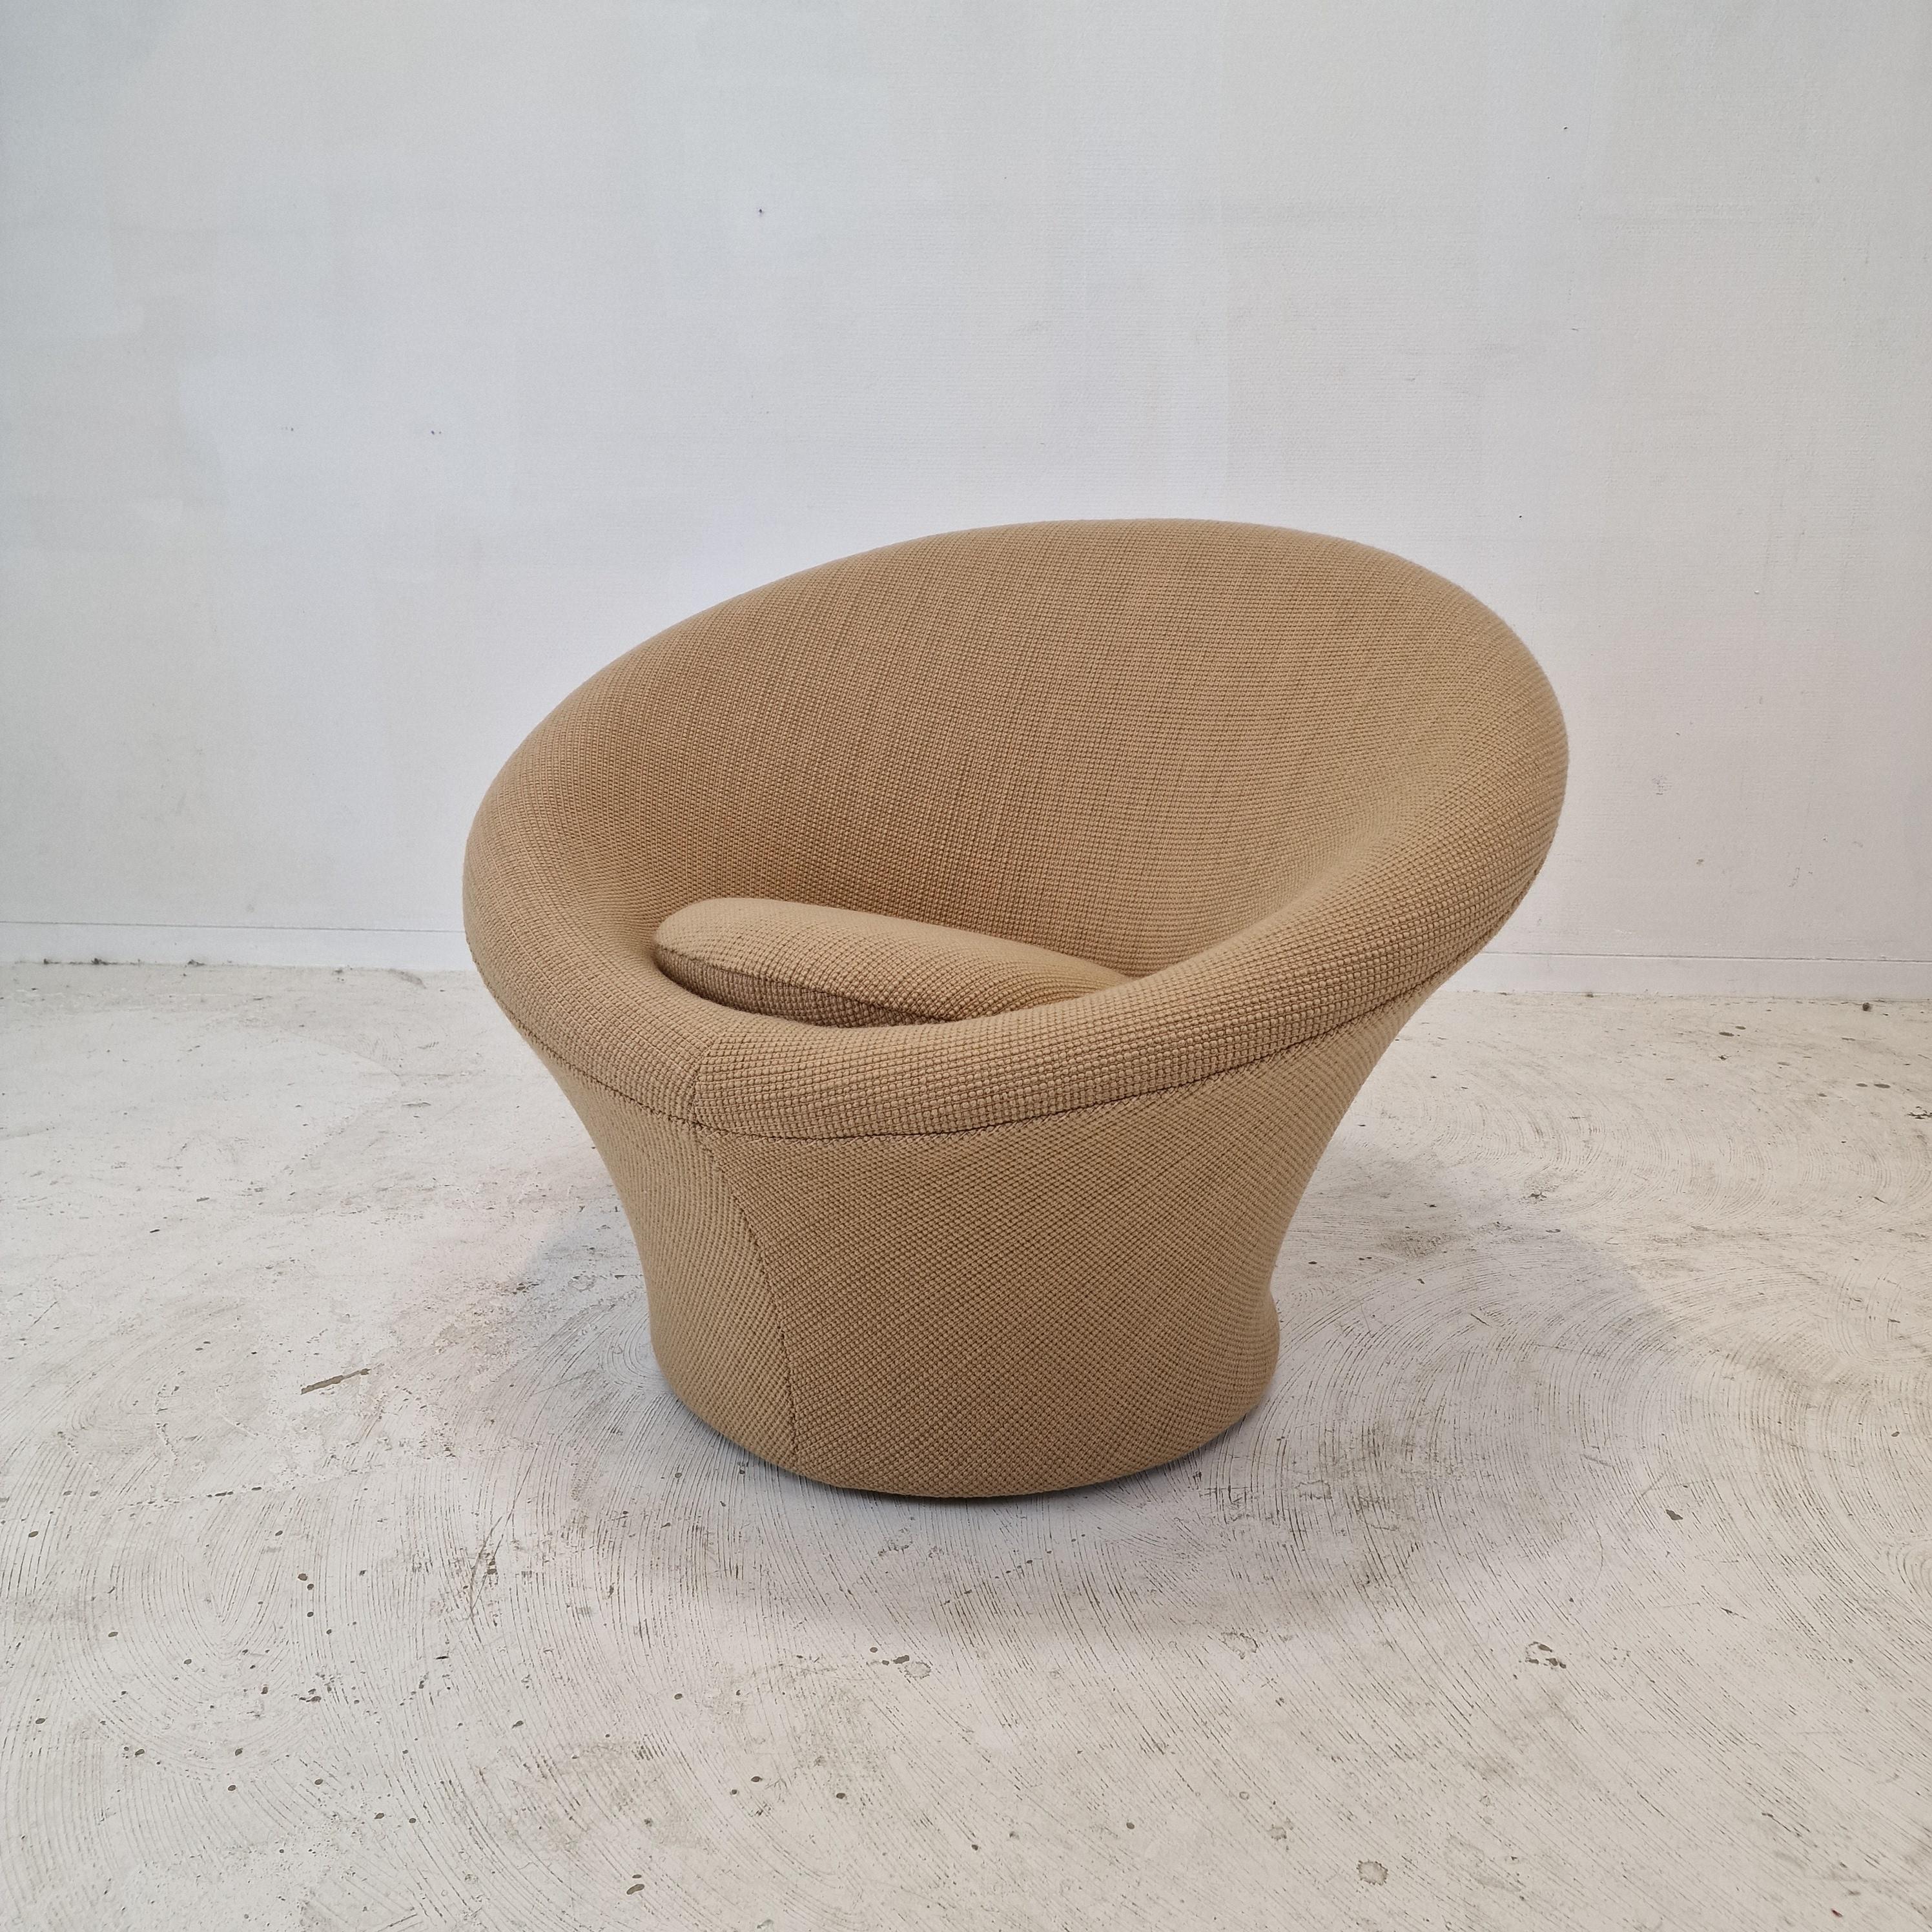 Chaise Artifort Mushroom très confortable et accueillante, conçue par Pierre Paulin dans les années 60. 
Ces chaises sont fabriquées dans les années 80.

Recouvert d'un très beau tissu de laine.

La chaise est entièrement restaurée avec un nouveau